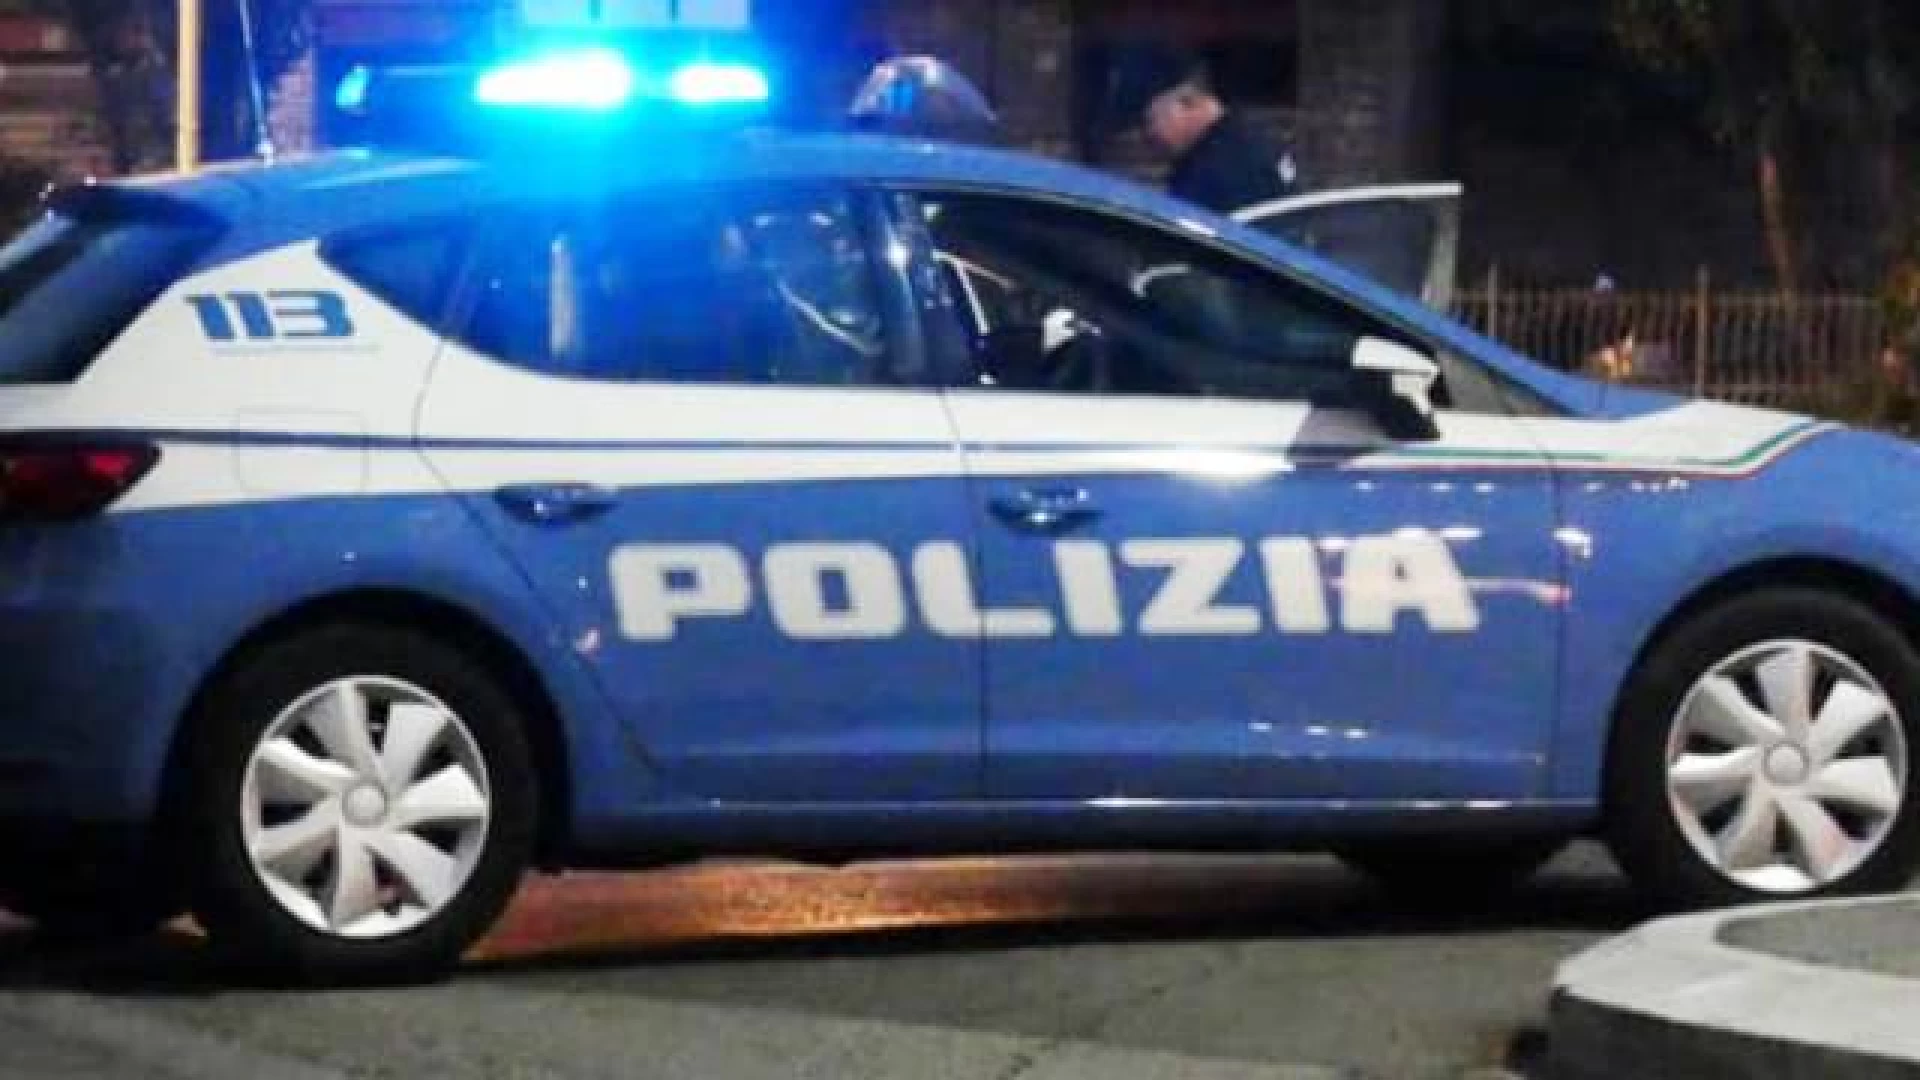 Isernia: la Polizia di Stato lancia la campagna contro le truffe agli anziani. I primi due incontri a Capracotta e Roccamandolfi.